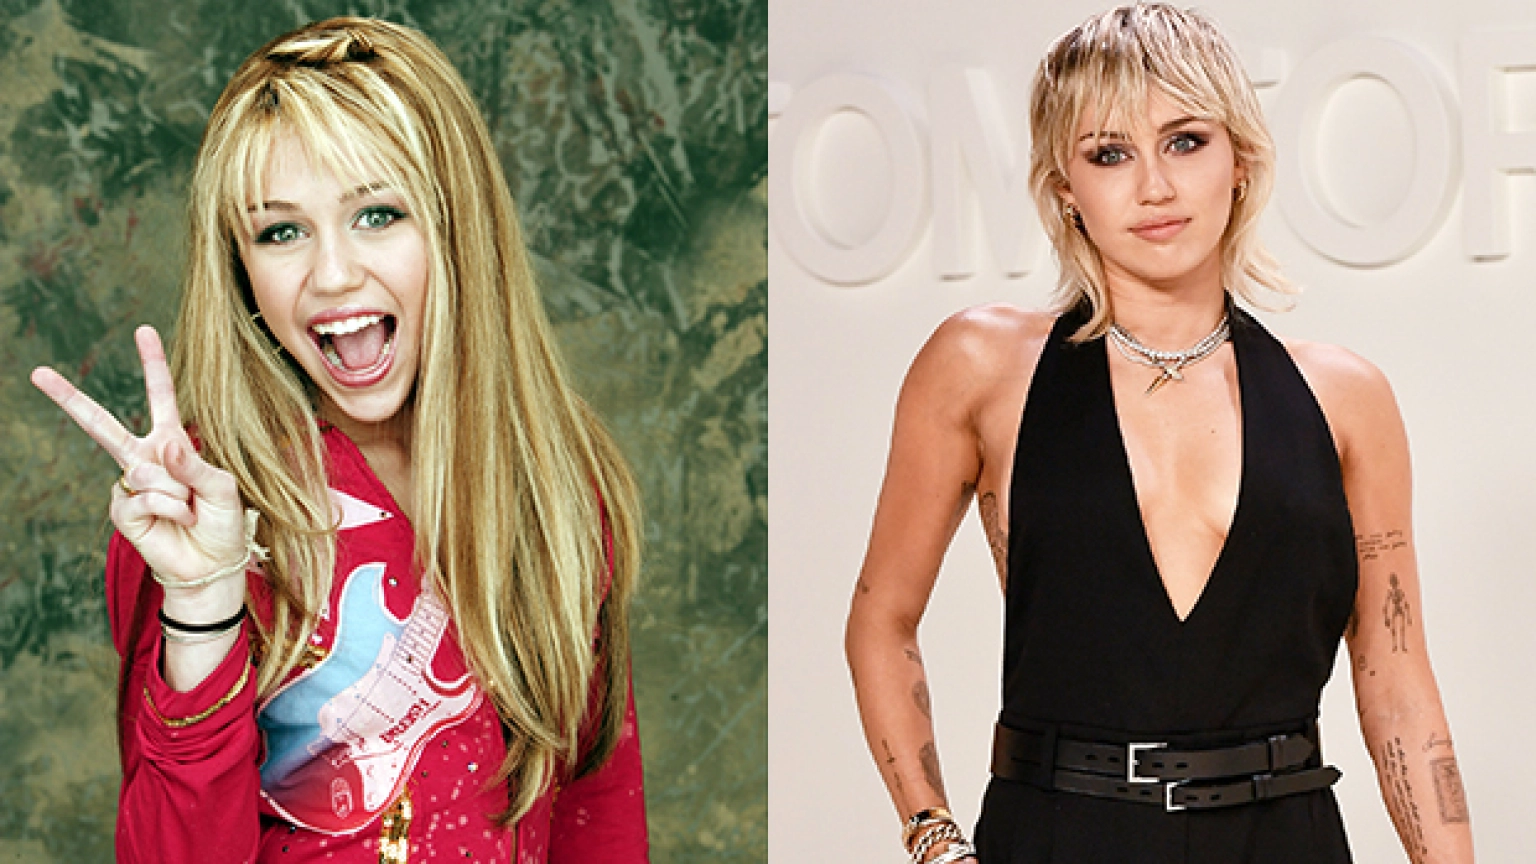 Miley Cyrus als Hannah Montana in einer langen blonden Perücke, lächelnd mit offenem Mund und Peace-Zeichen. Miley Cyrus jetzt mit kurzen, platinblonden Haaren und einem tief ausgeschnittenen schwarzen Oberteil, das ihre Tätowierungen zur Geltung bringt.